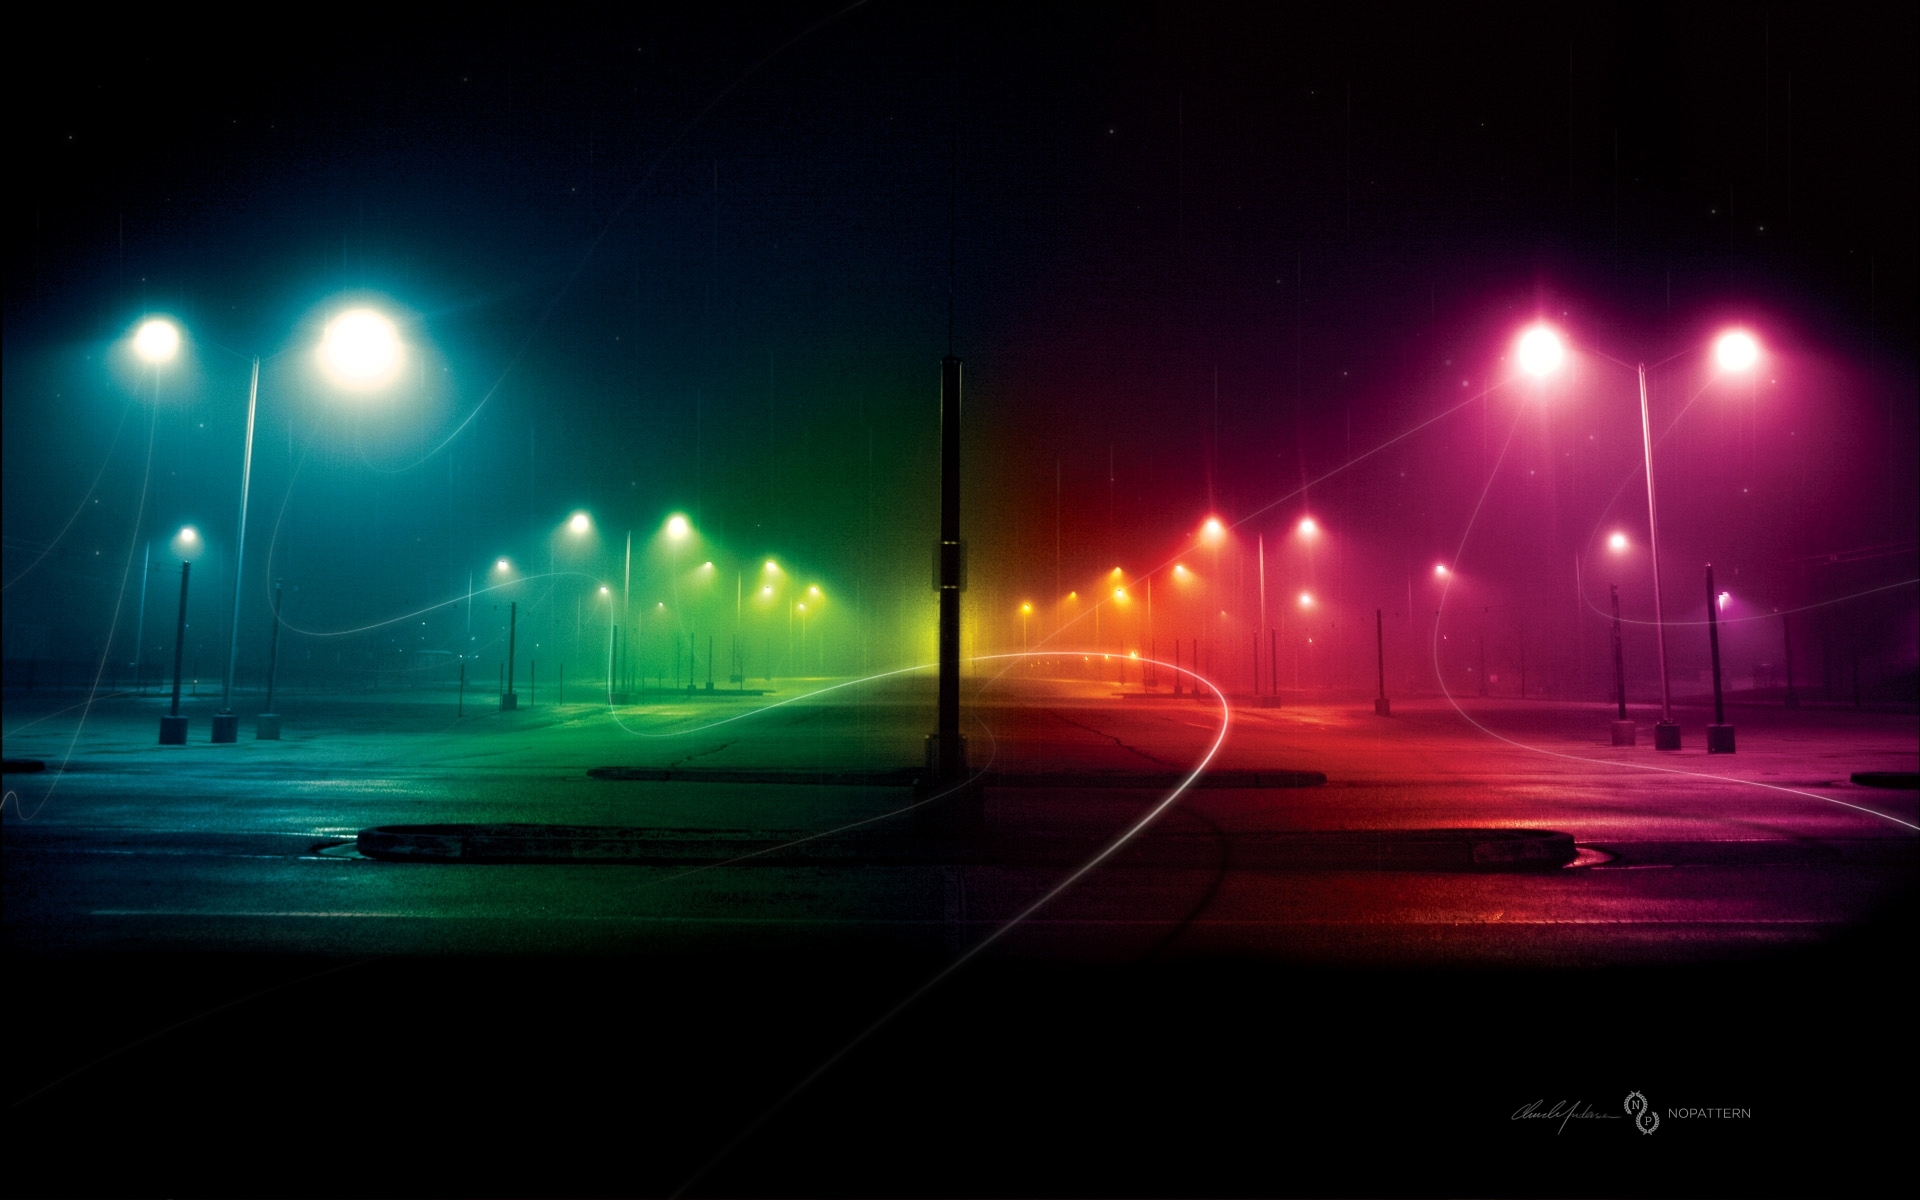 City Night & Rainbow Light wallpaper. City Night & Rainbow Light